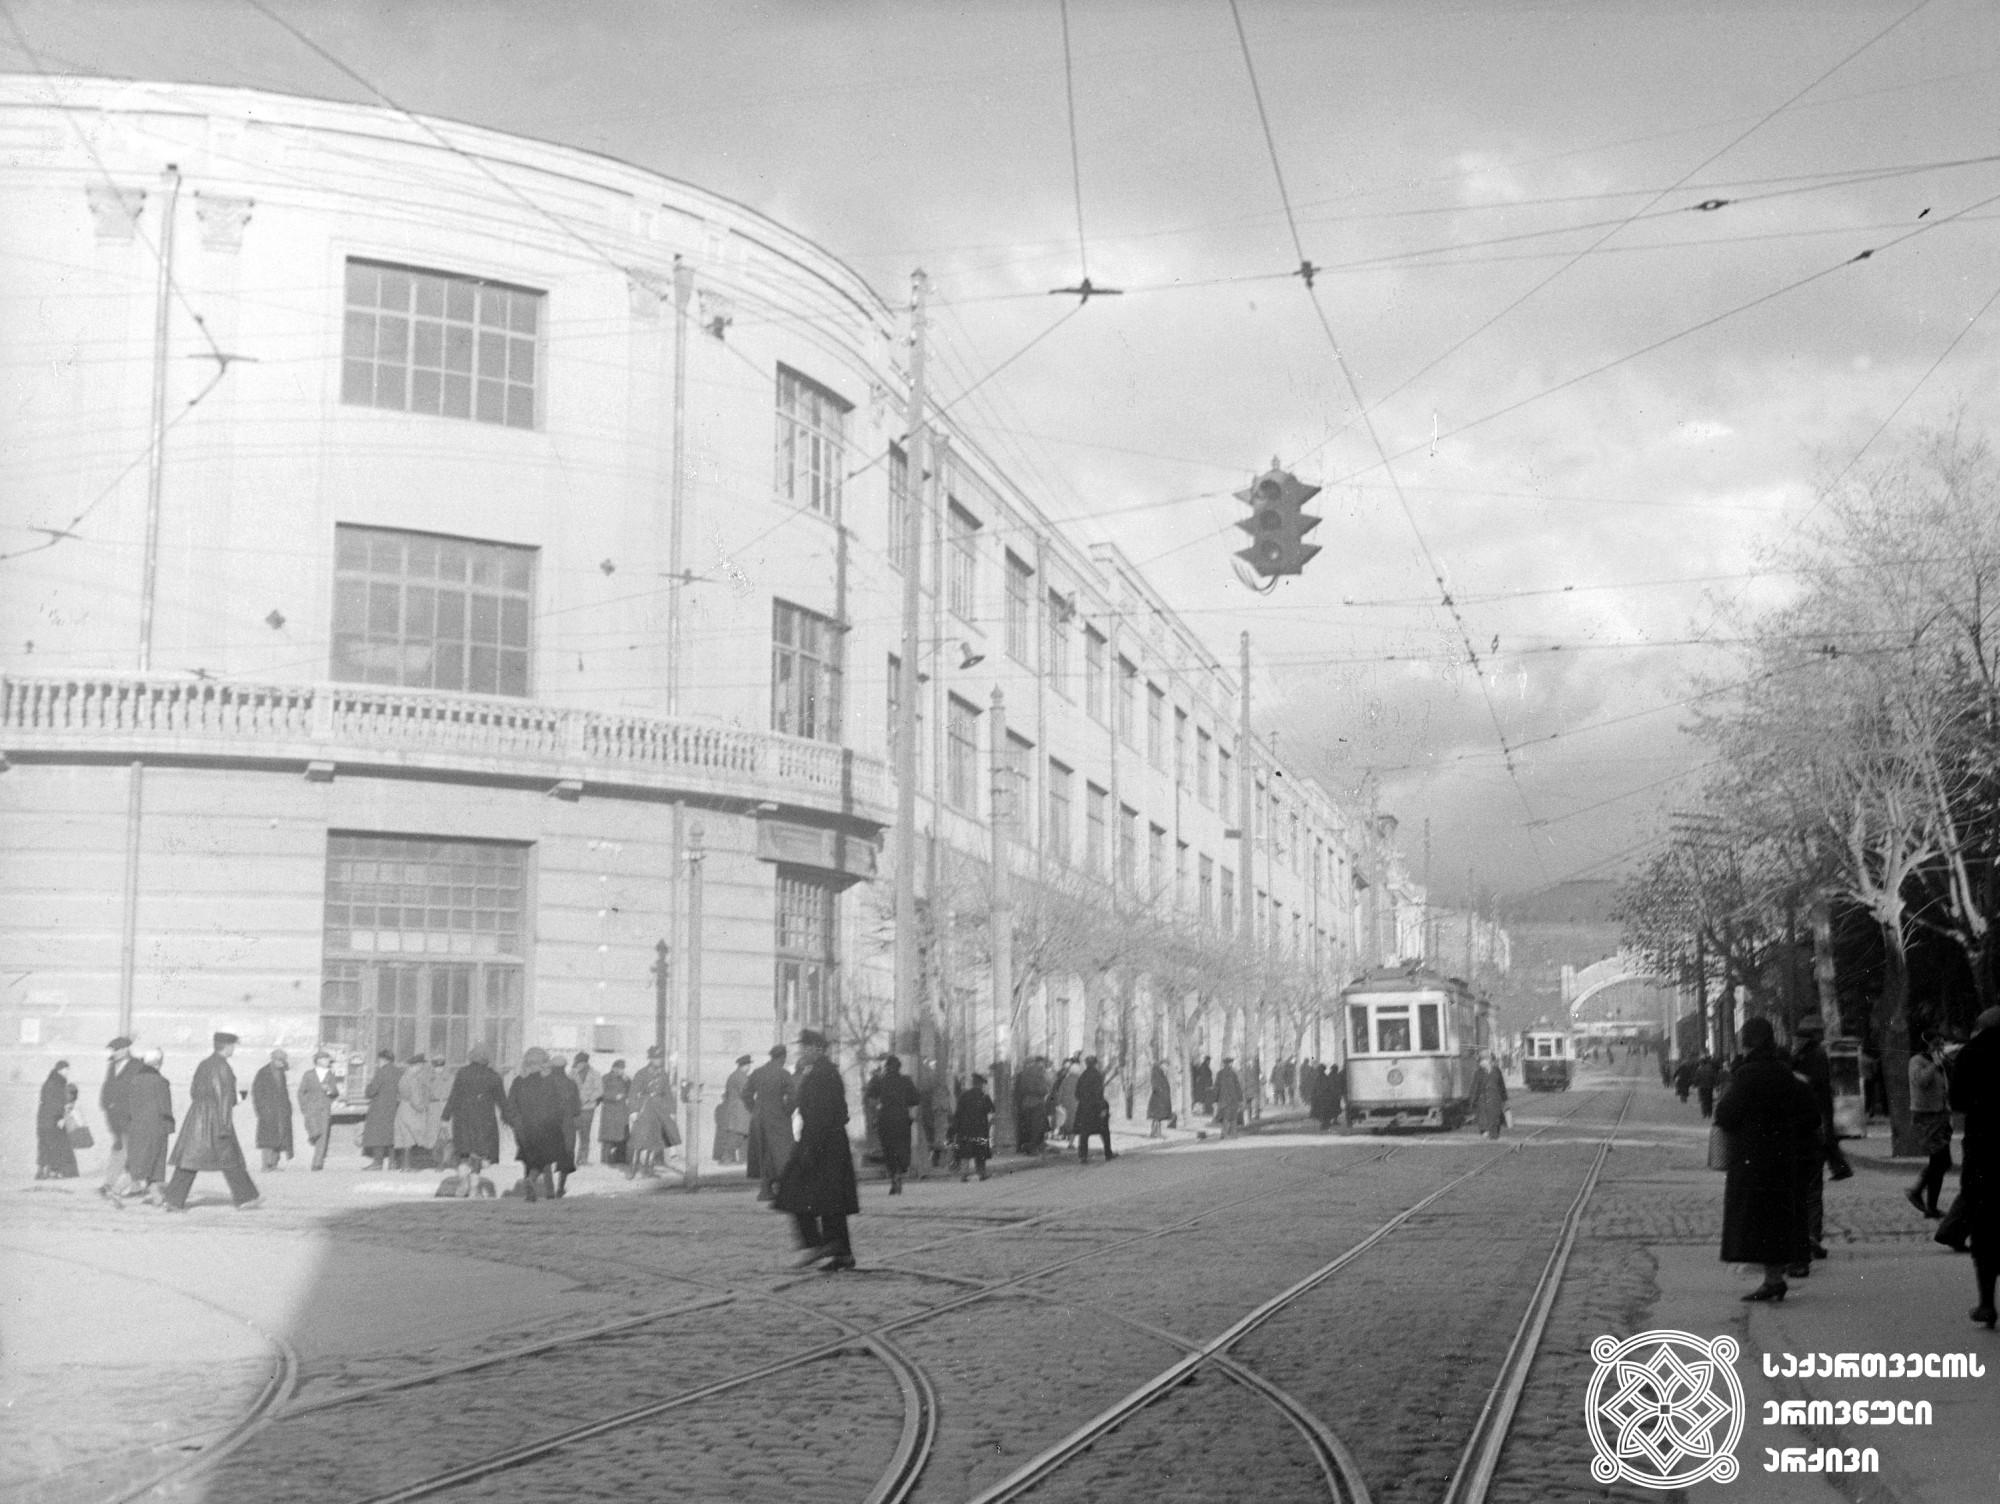 ჩელიუსკინელების ქუჩის საერთო ხედი (დღევანდელი თამარ მეფის გამზირი). თბილისი. <br> ფოტო: ვლადიმირ სტოლიაროვი. <br>1938. <br>
General view of Chelyuskin Street (today King Tamar's Avenue). Tbilisi. <br>Photo by Vladimir Stoliarov. <br>1938.